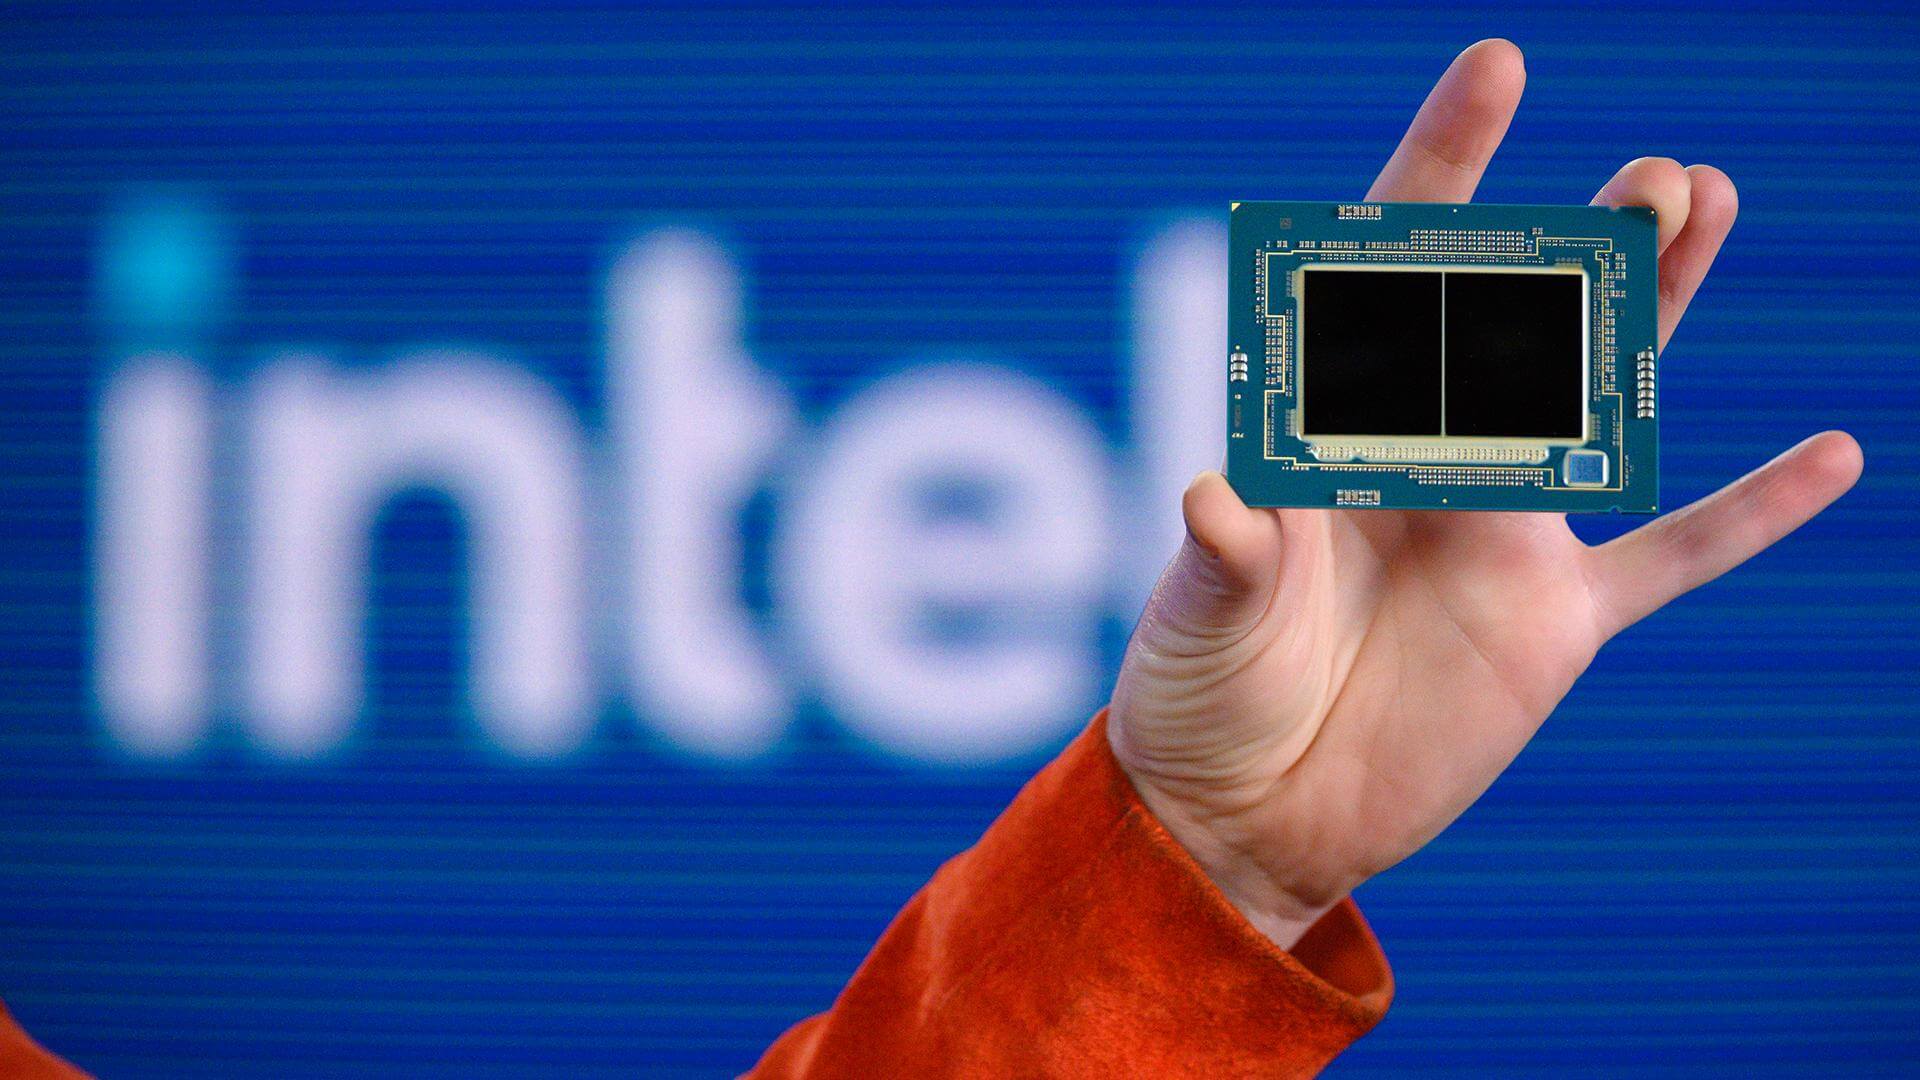 Rò rỉ thông tin về thế hệ Intel Xeon mới: Kiến trúc mới, mạnh mẽ và tiết kiệm điện hơn